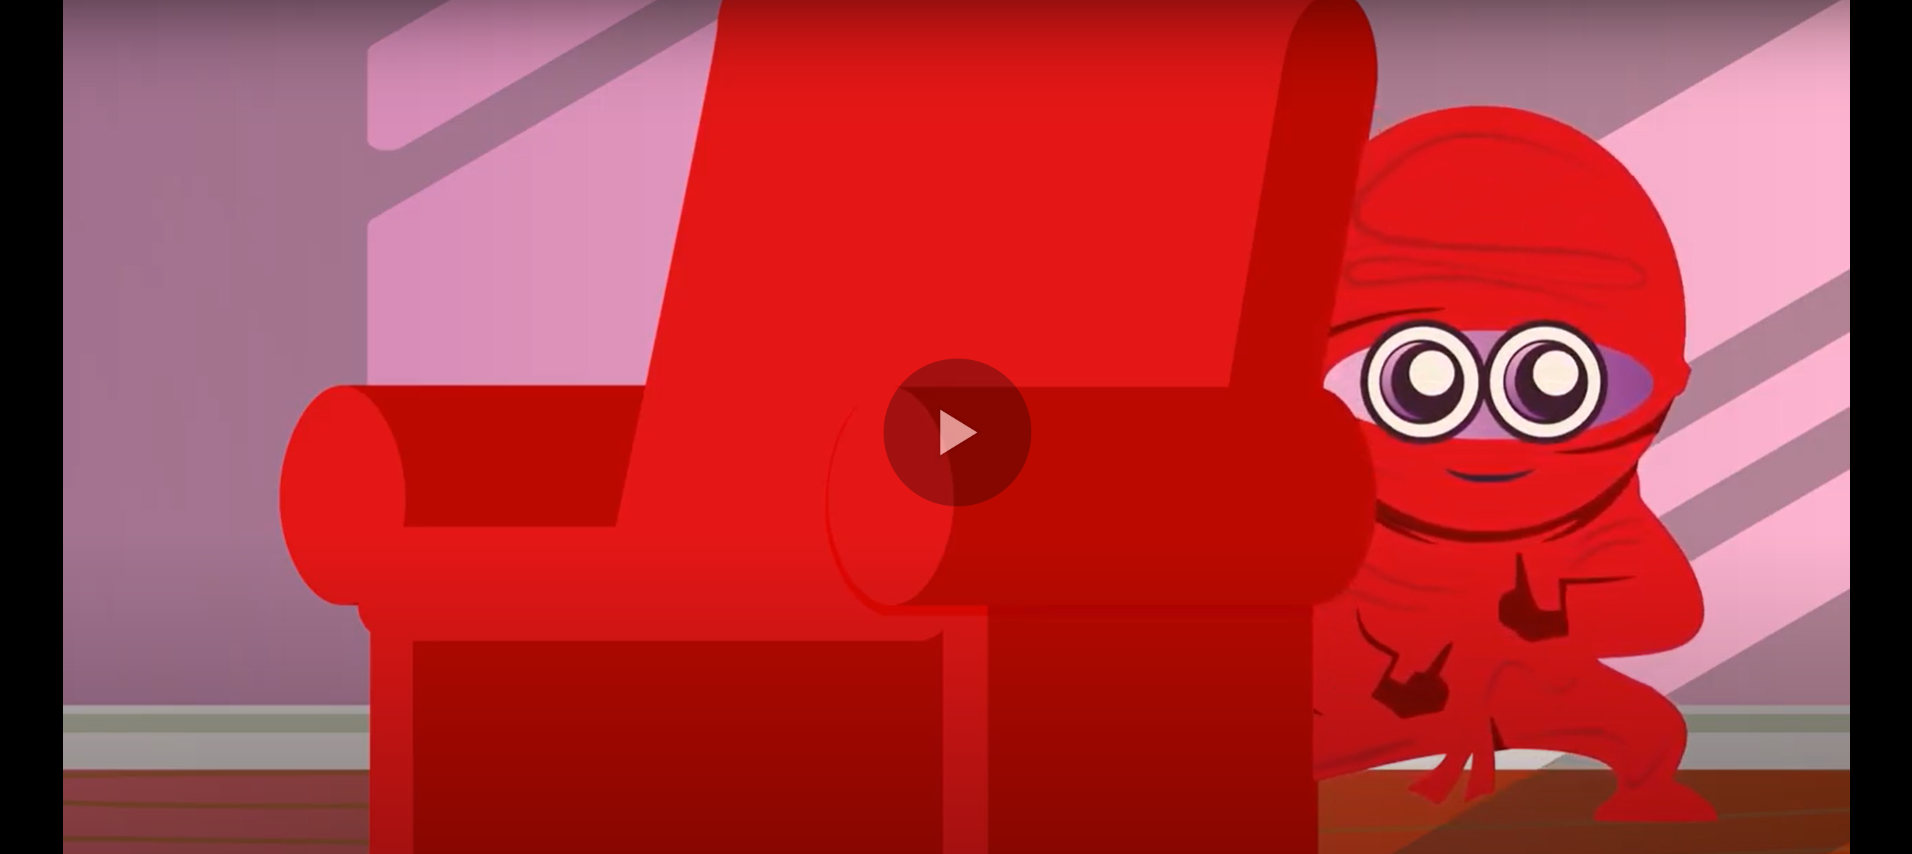 Descripción de la imagen: Una captura de pantalla de un vídeo de animación. Un niño de dibujos animados vestido con un traje de ninja rojo se esconde detrás de un sillón rojo. Un pequeño icono de juego está en el centro de la imagen.